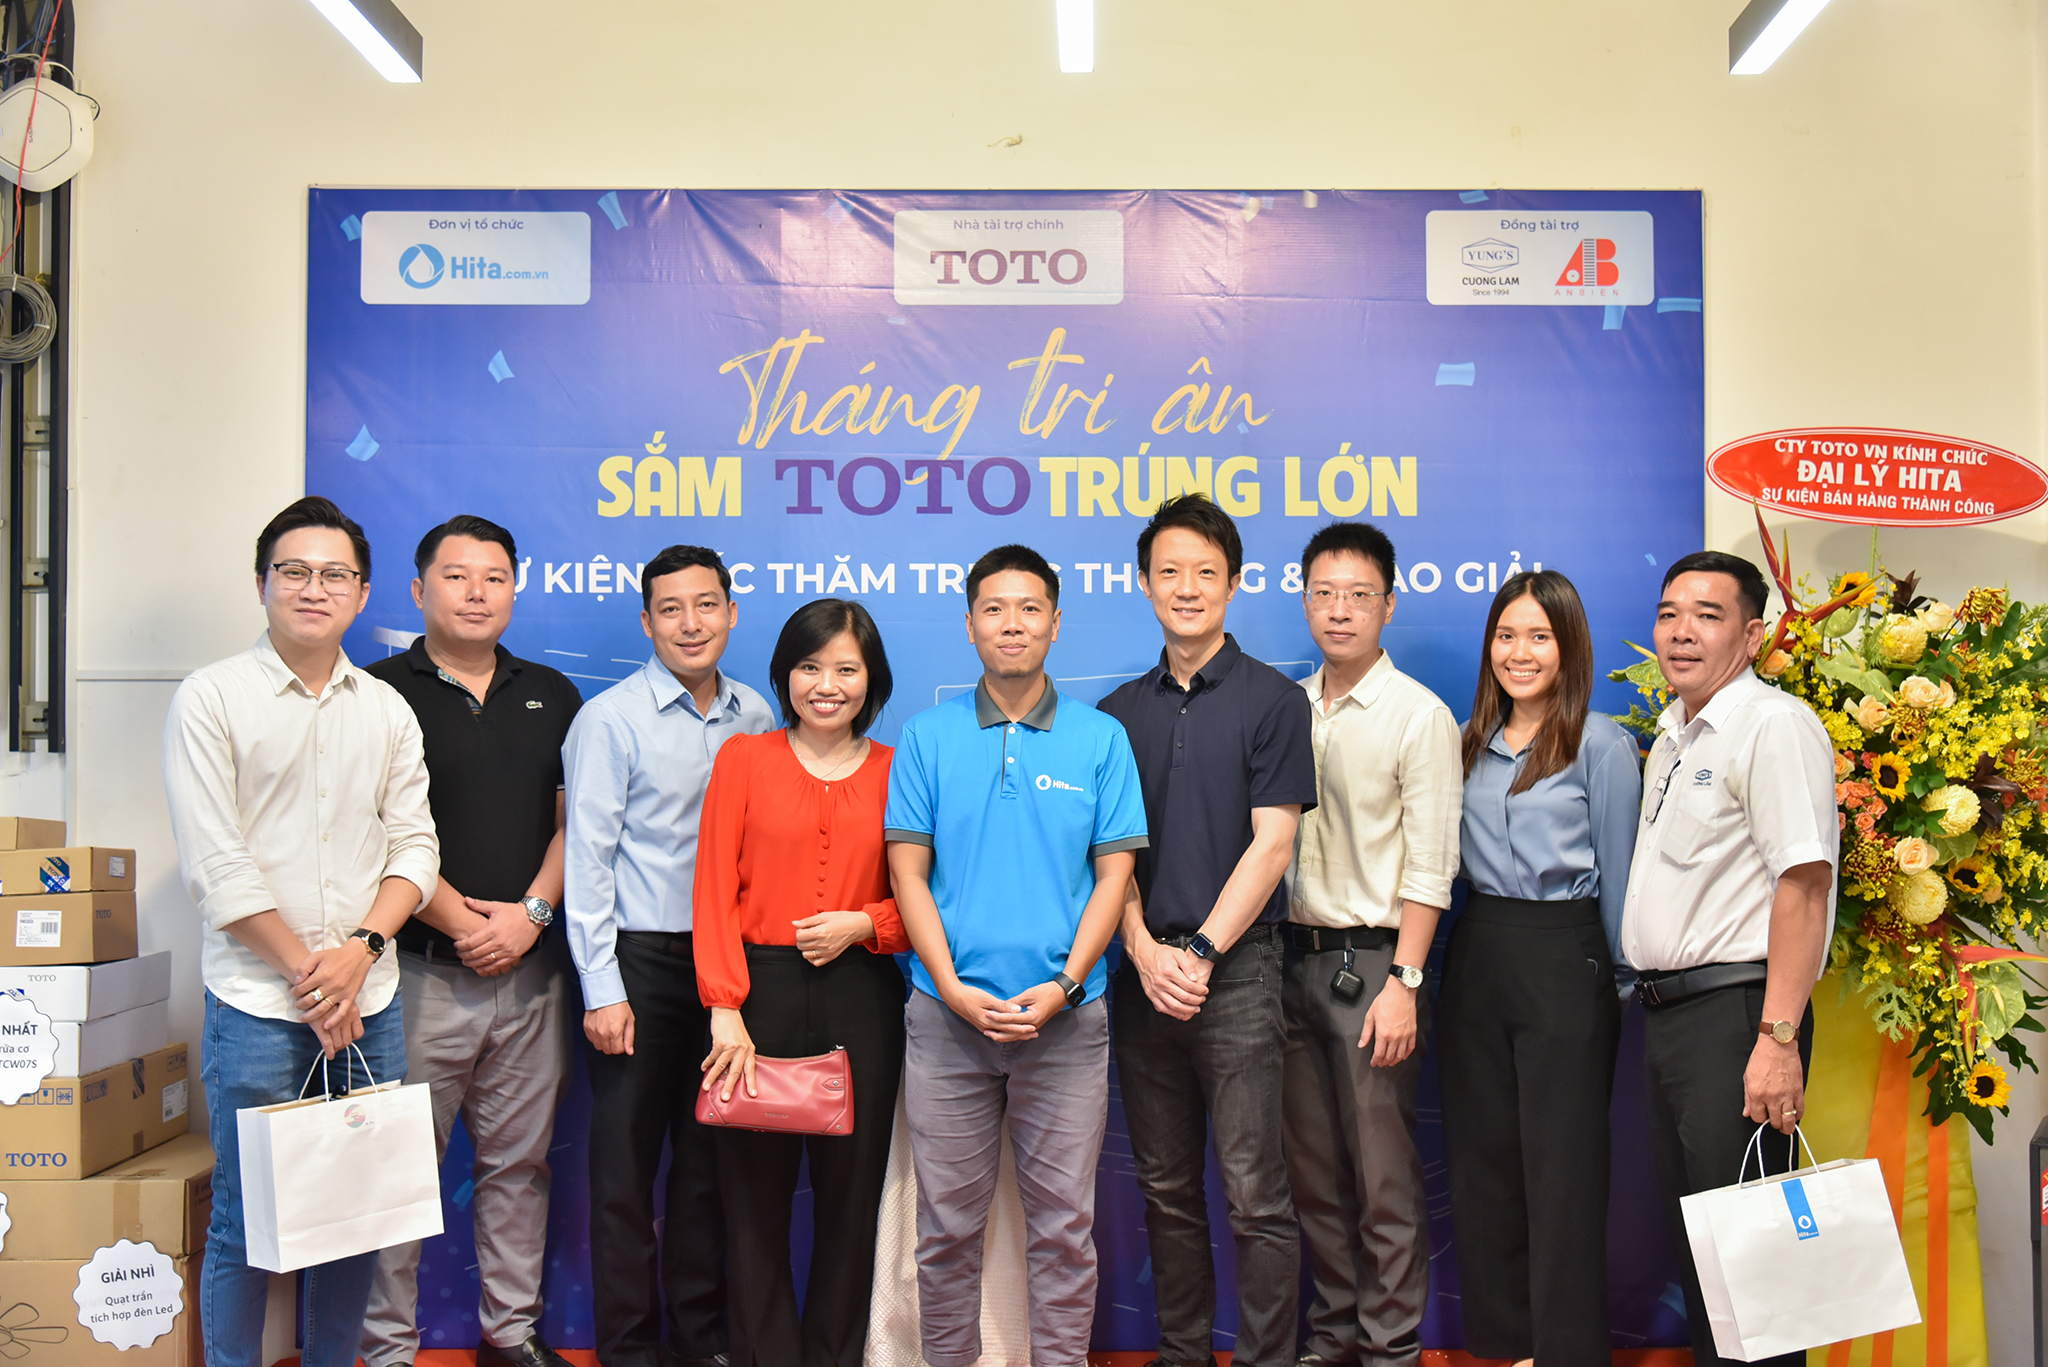 Khách mời đại diện TOTO và nhà phân phối chụp ảnh chung với CEO HITA